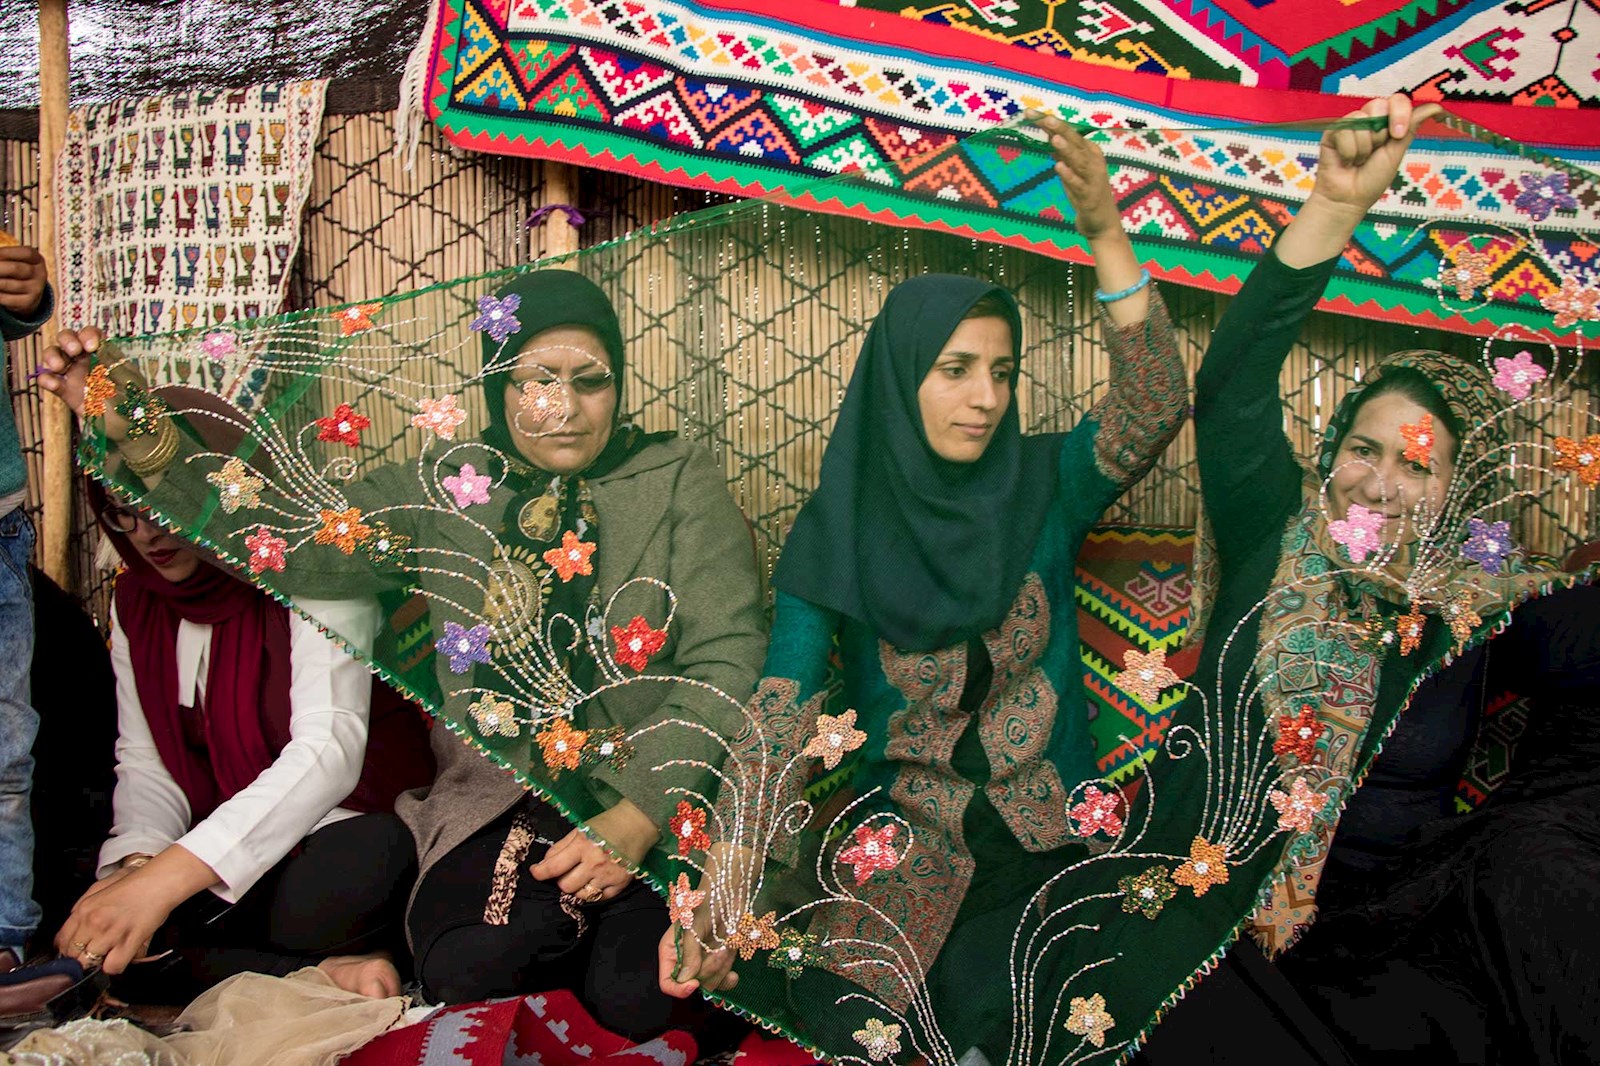 دوختن ملیله و مروارید بر روی روسری یکی از صنایع دستی زنان روستایی است. این روسری‌ها پوشش سنتی عشایر قشقایی نیز می‌باشد.